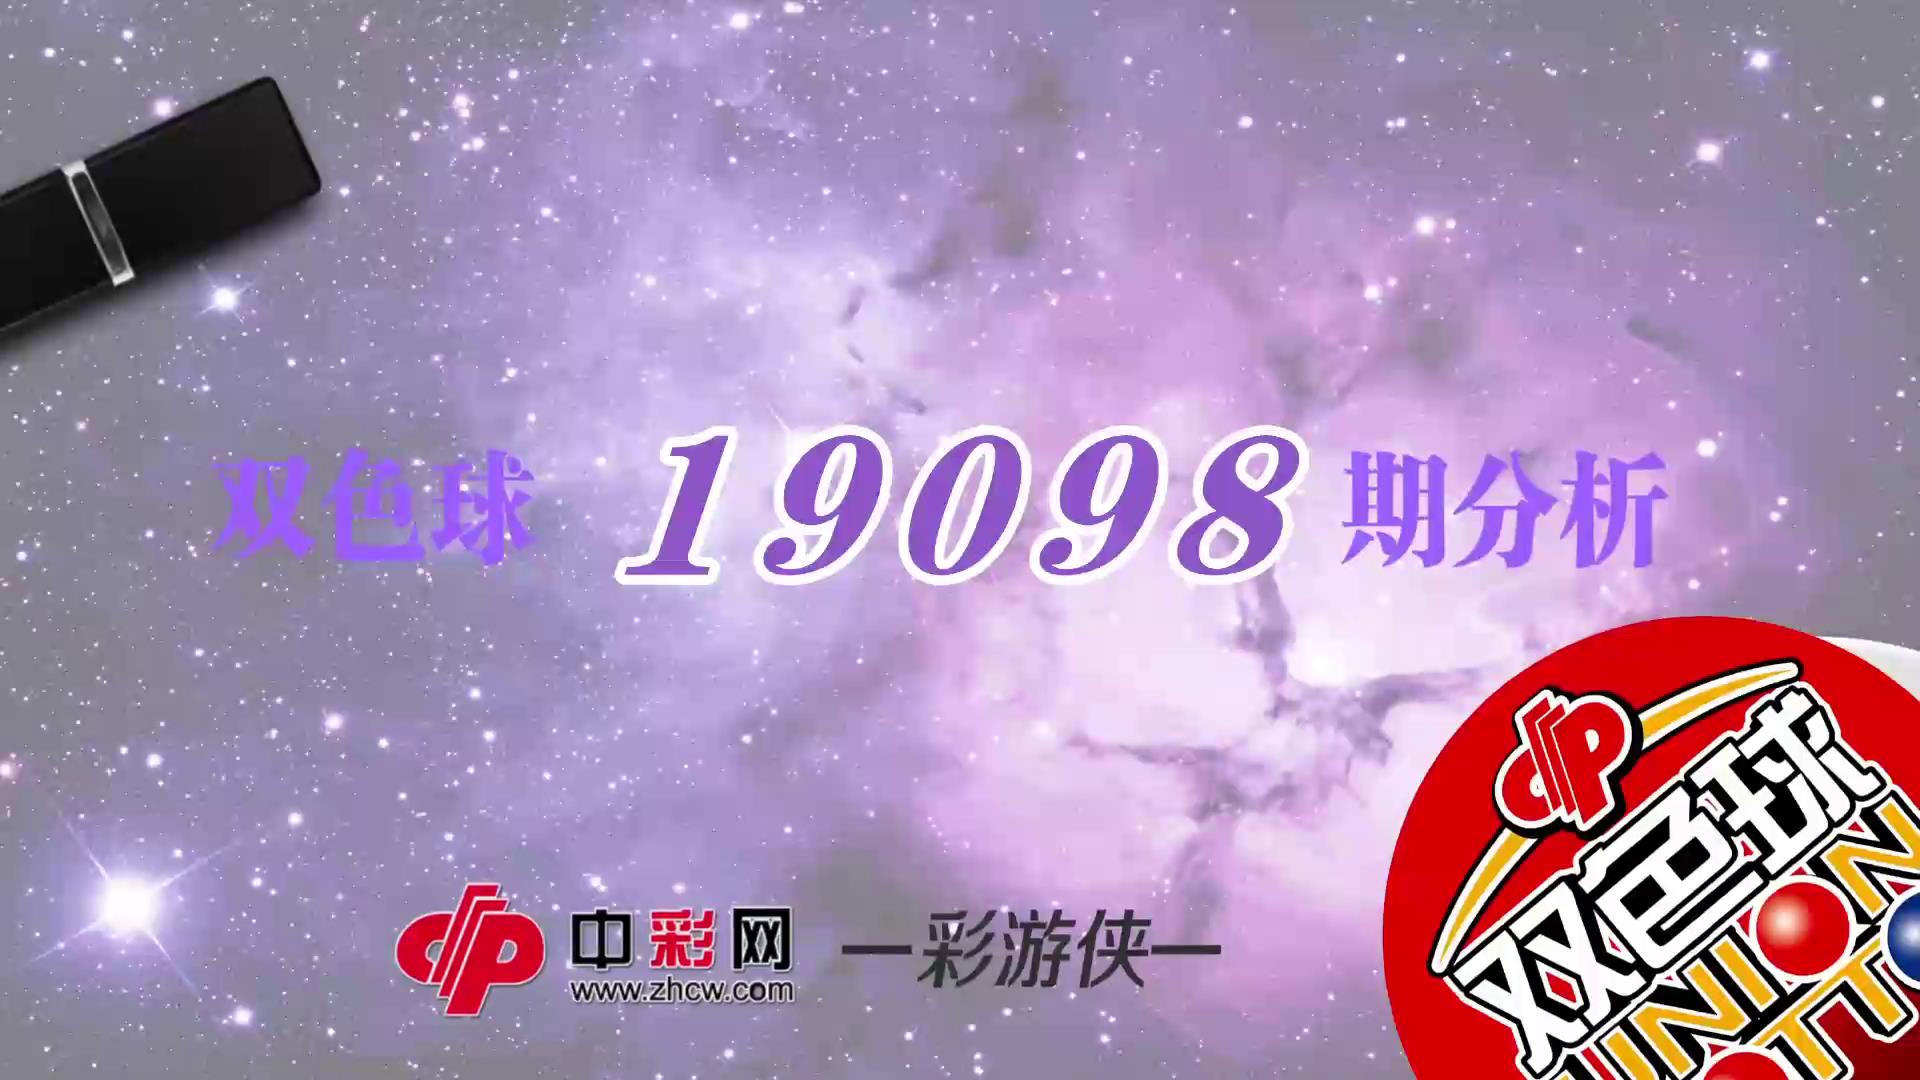 【中彩视频】彩游侠双色球第19098期